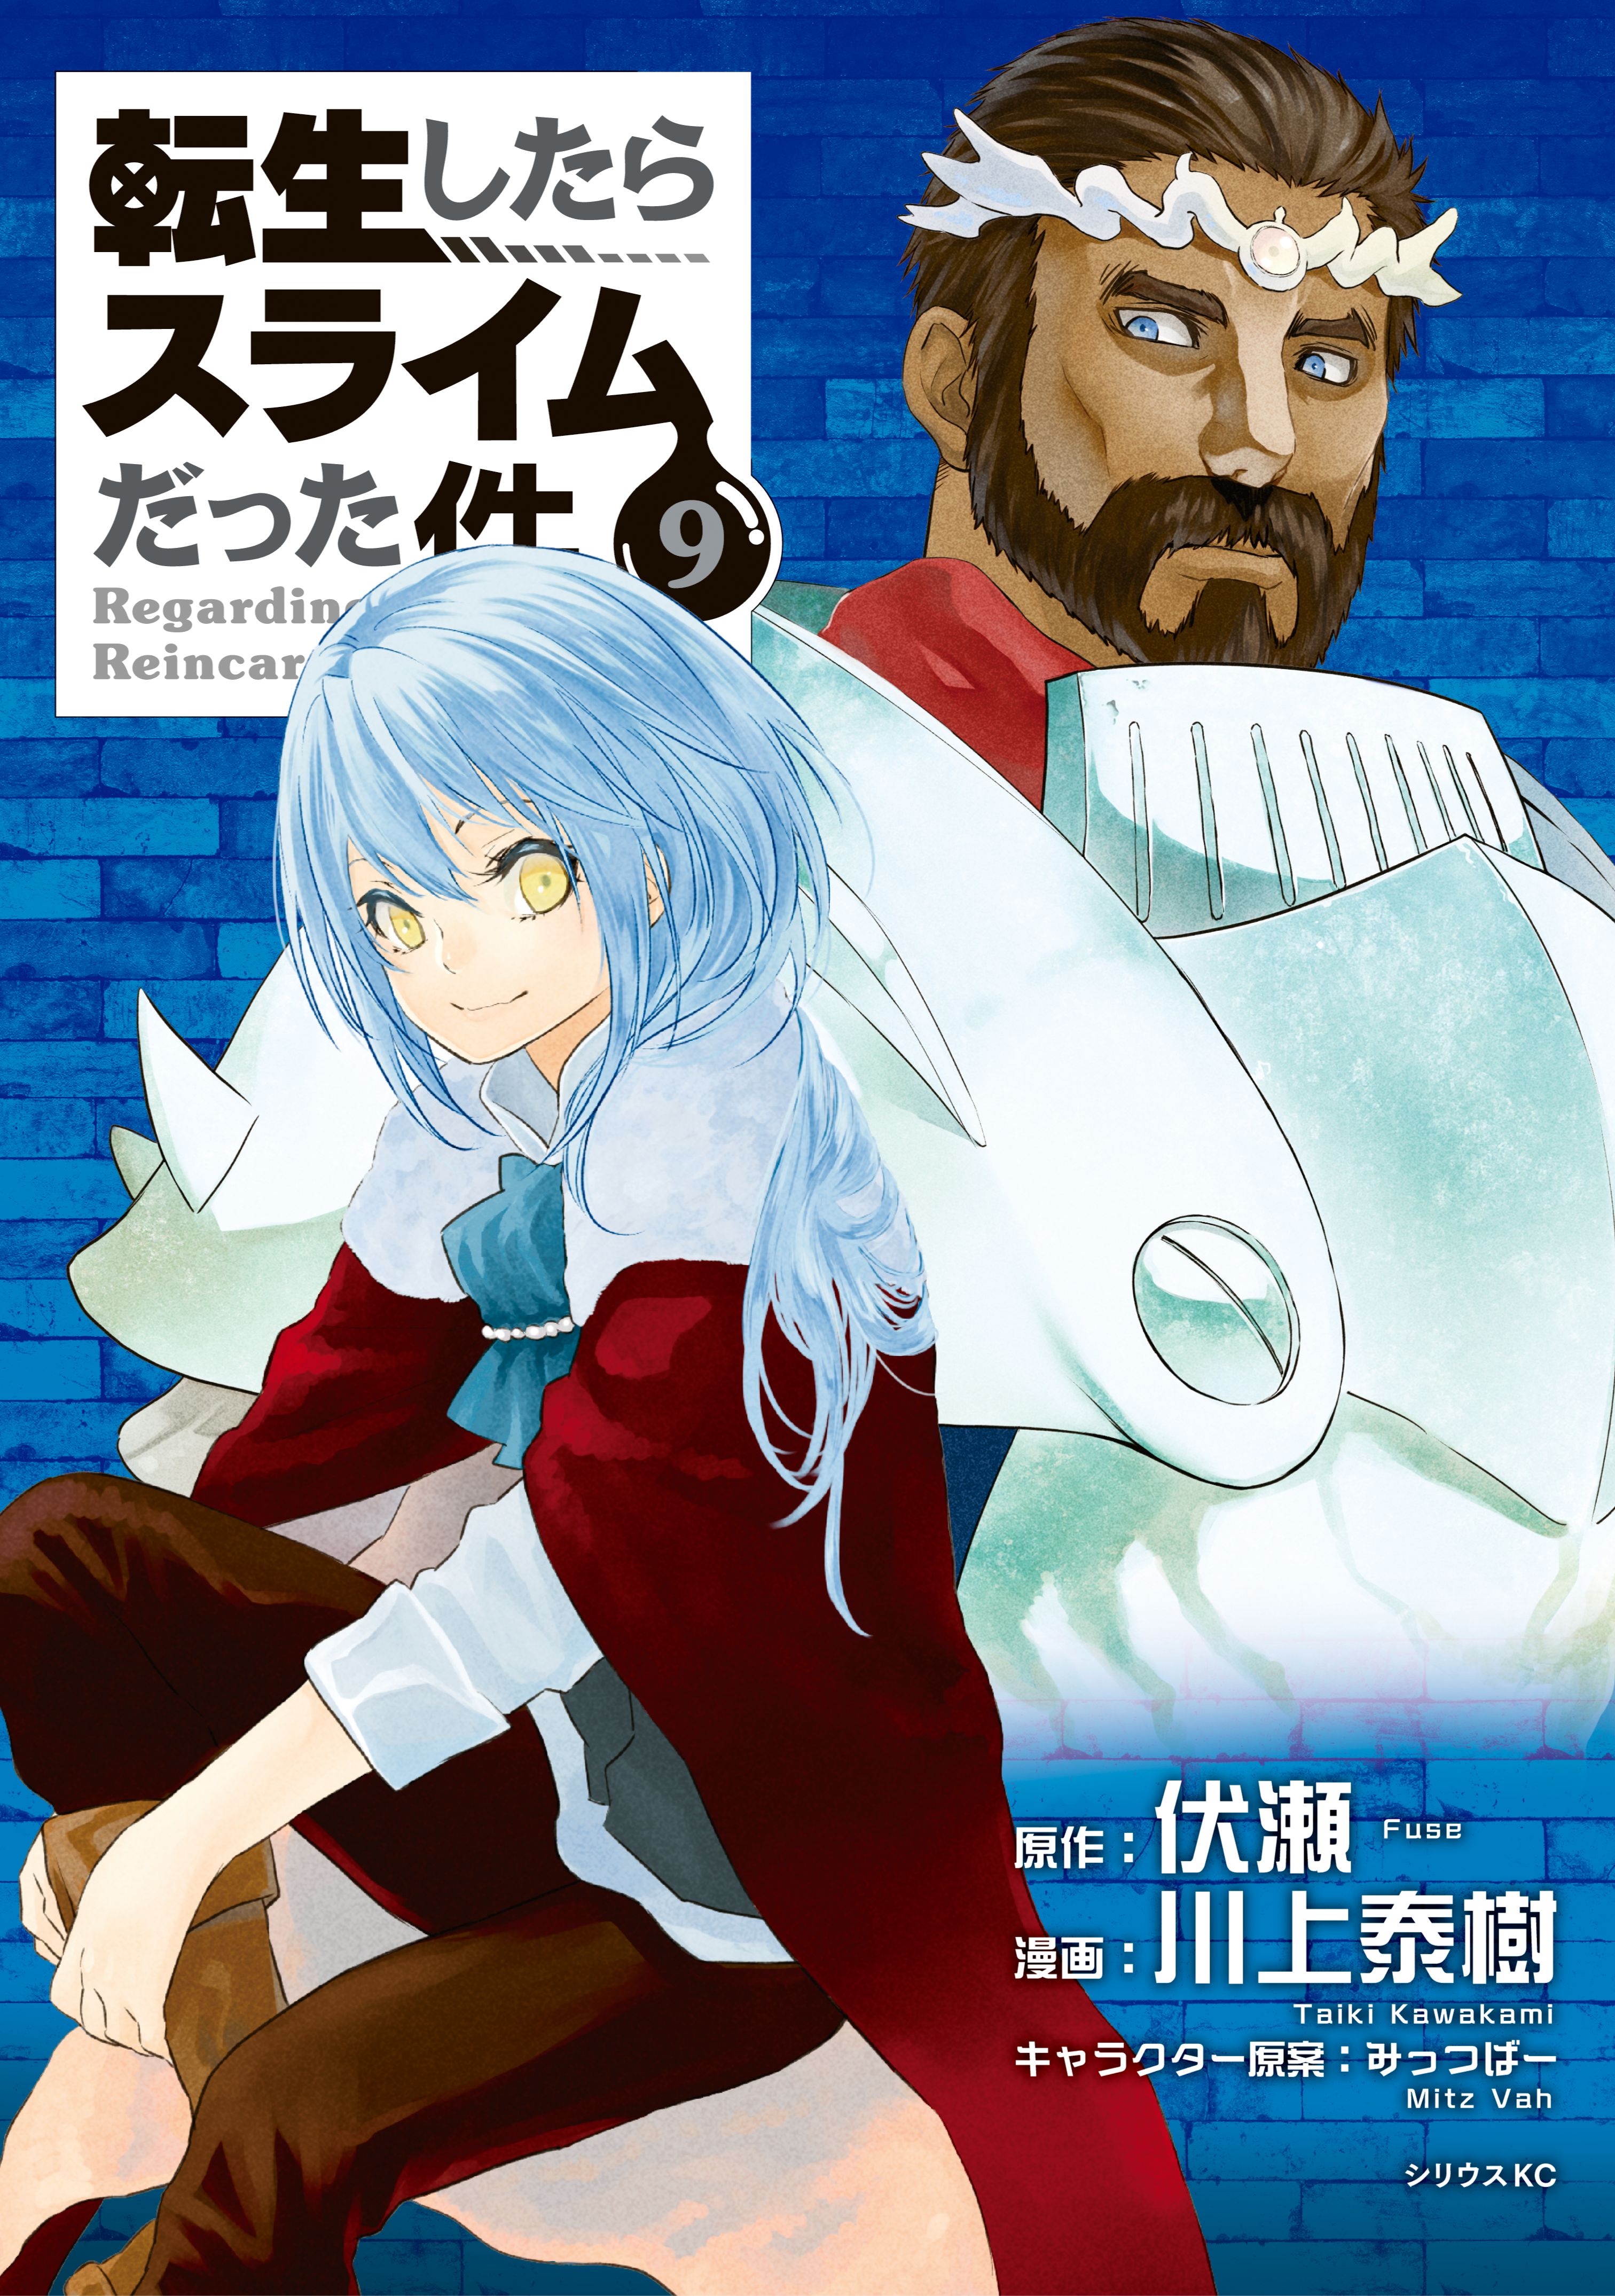 Manga Volume 3, Tensei Shitara Slime Datta Ken Wiki